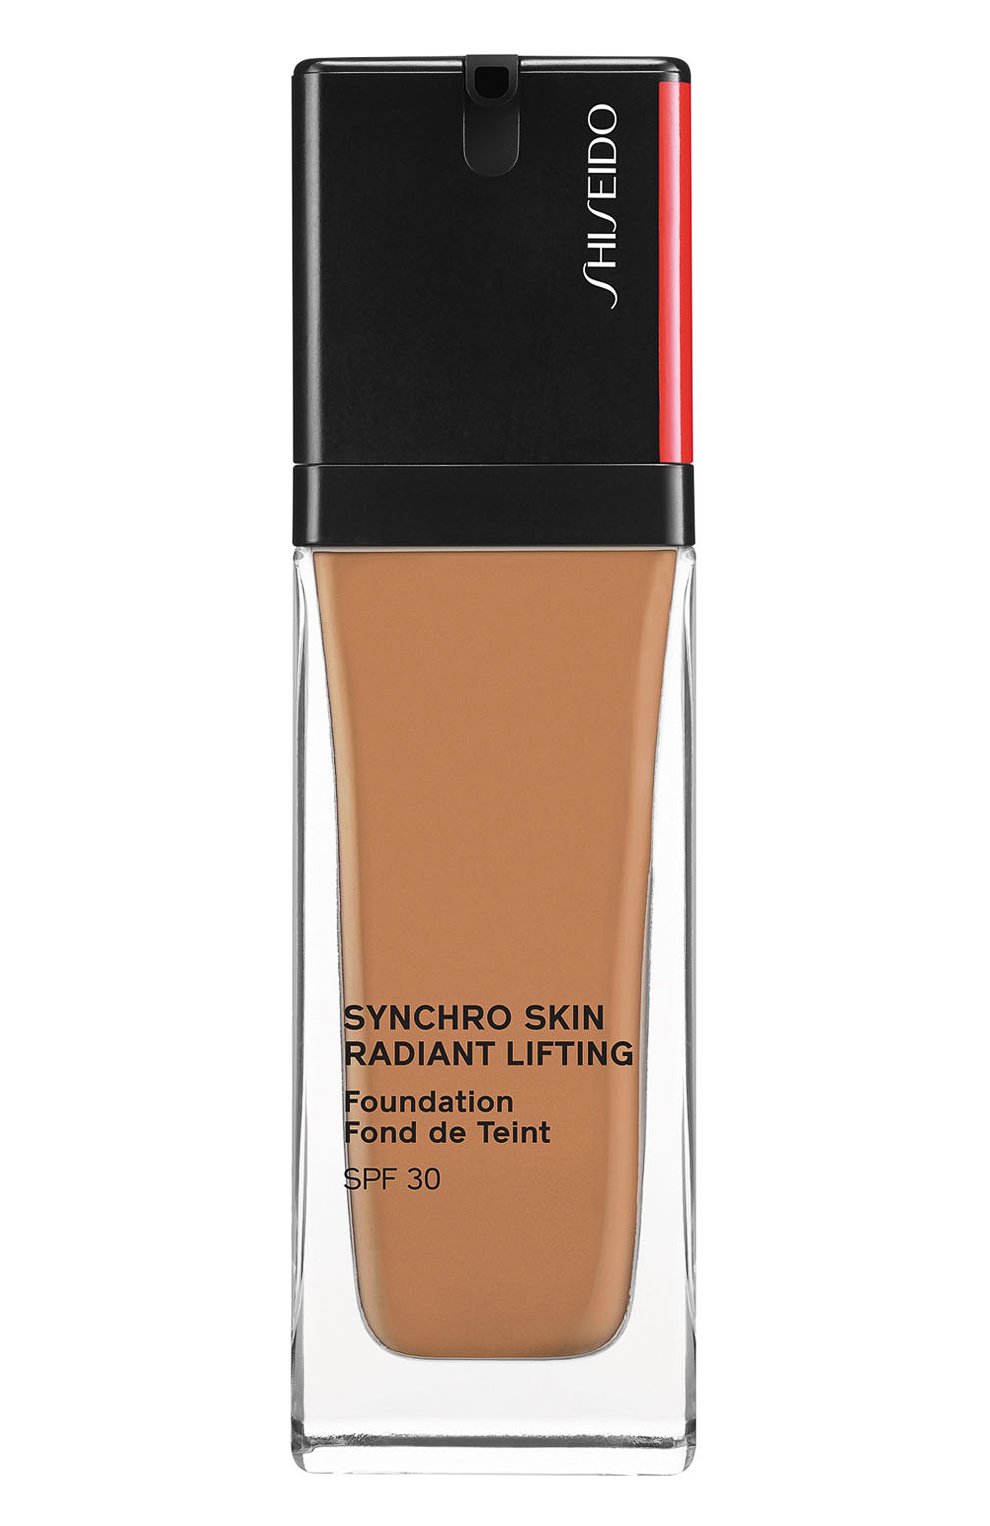 Шисейдо тональный крем с эффектом сияния. Shiseido. Radiant Lifting Foundation тон 240. Shiseido Synchro Skin Radiant Lifting Foundation цвета. Палитра Shiseido Synchro Skin Radiant Lifting Foundation SPF 30. Shiseido synchro skin lifting